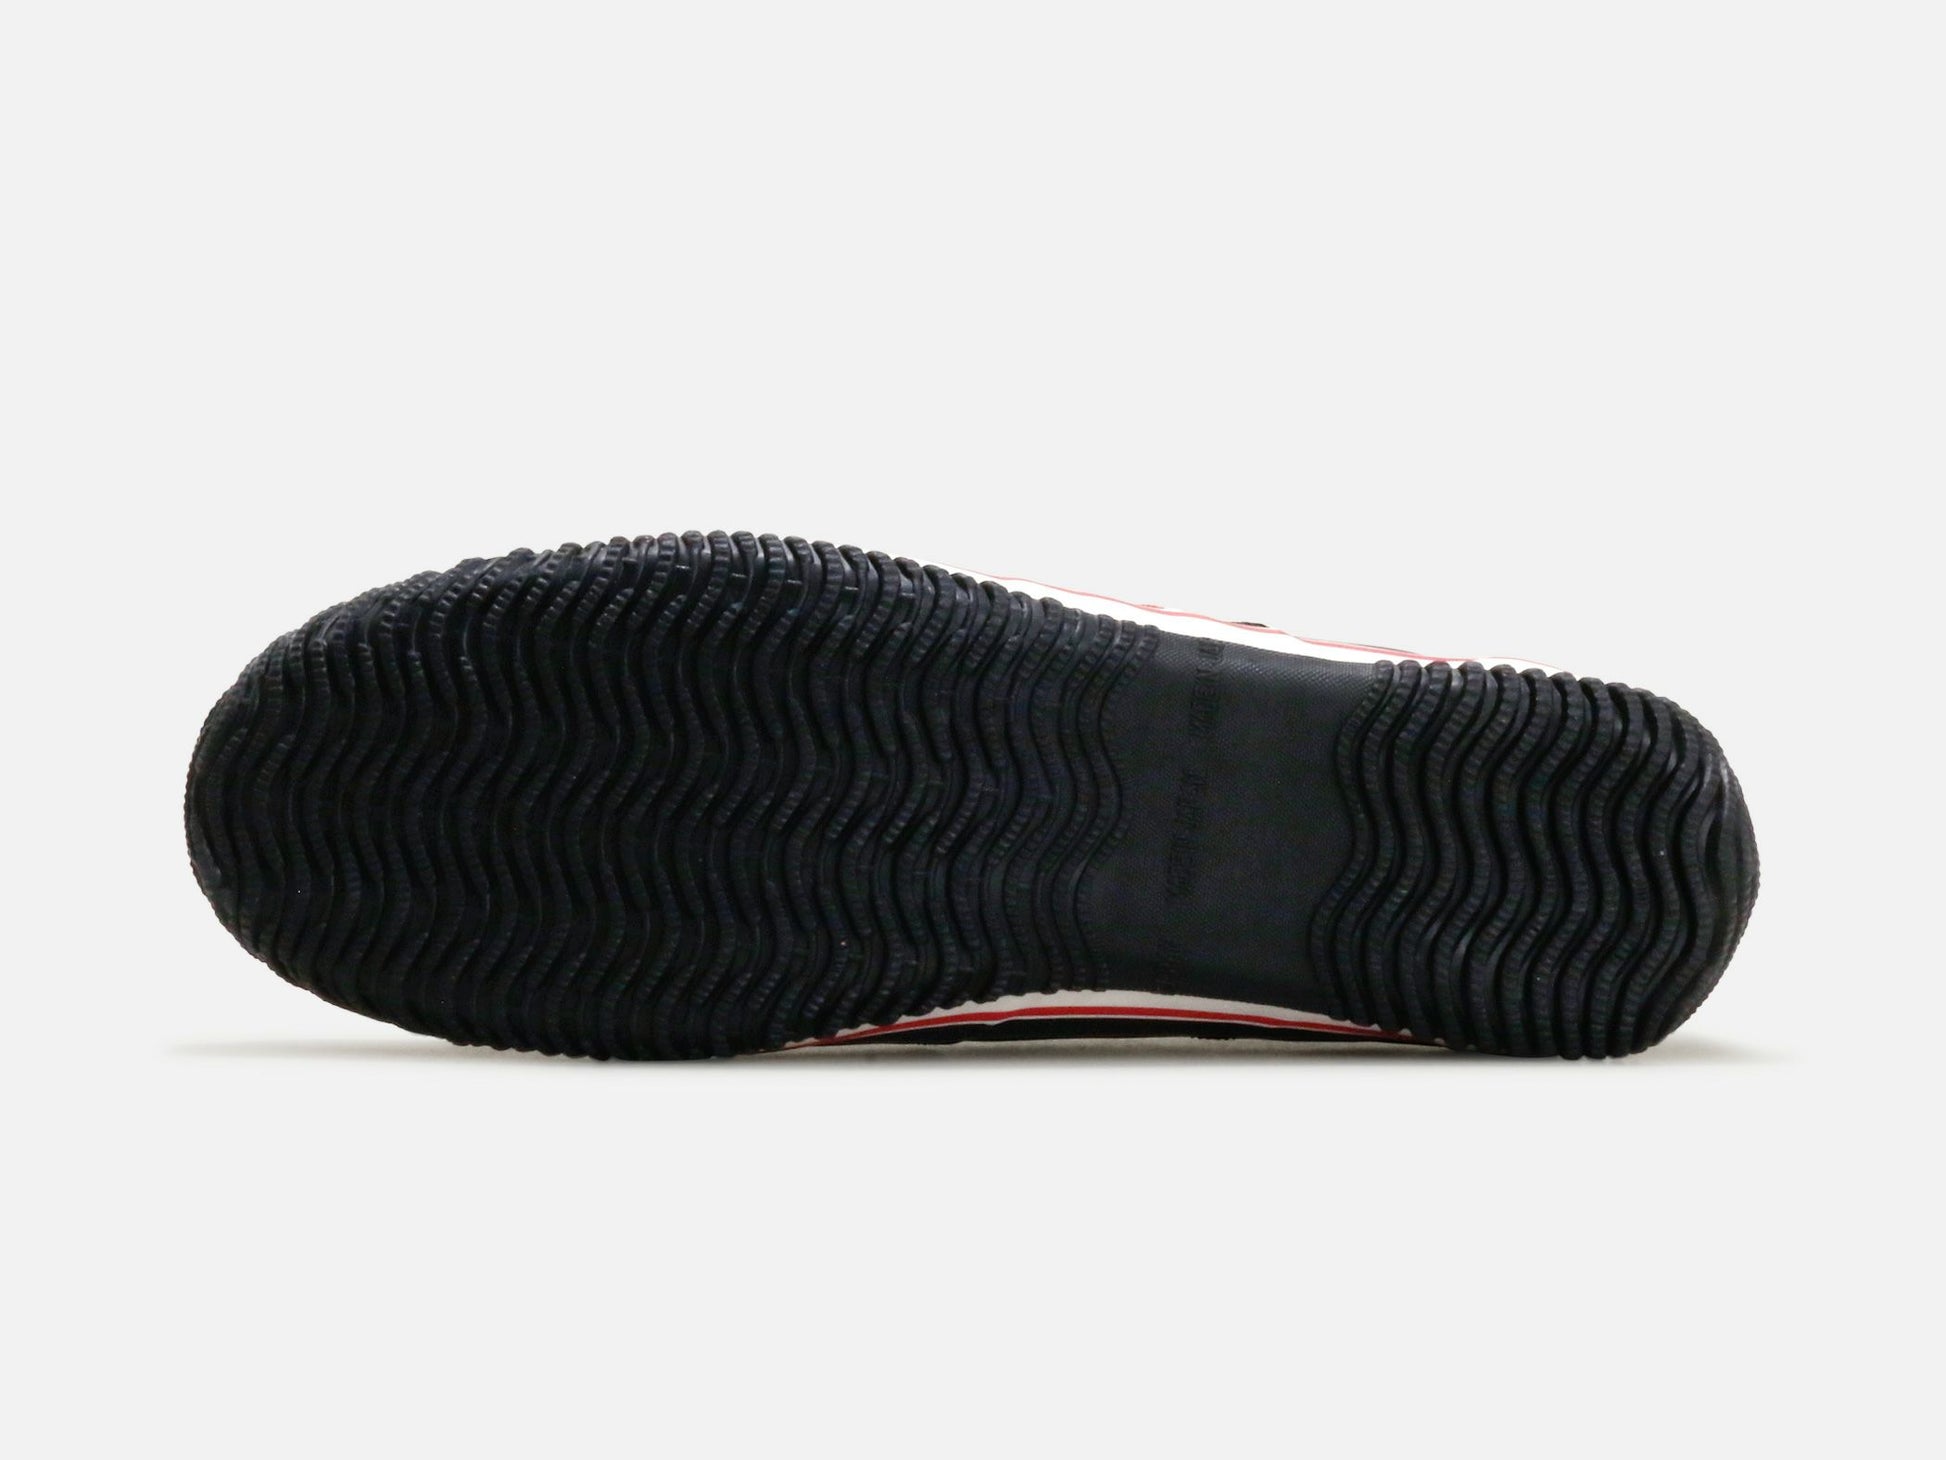 SPINGLE MOVEのスニーカー「SPM-198 Black」の靴底の商品画像